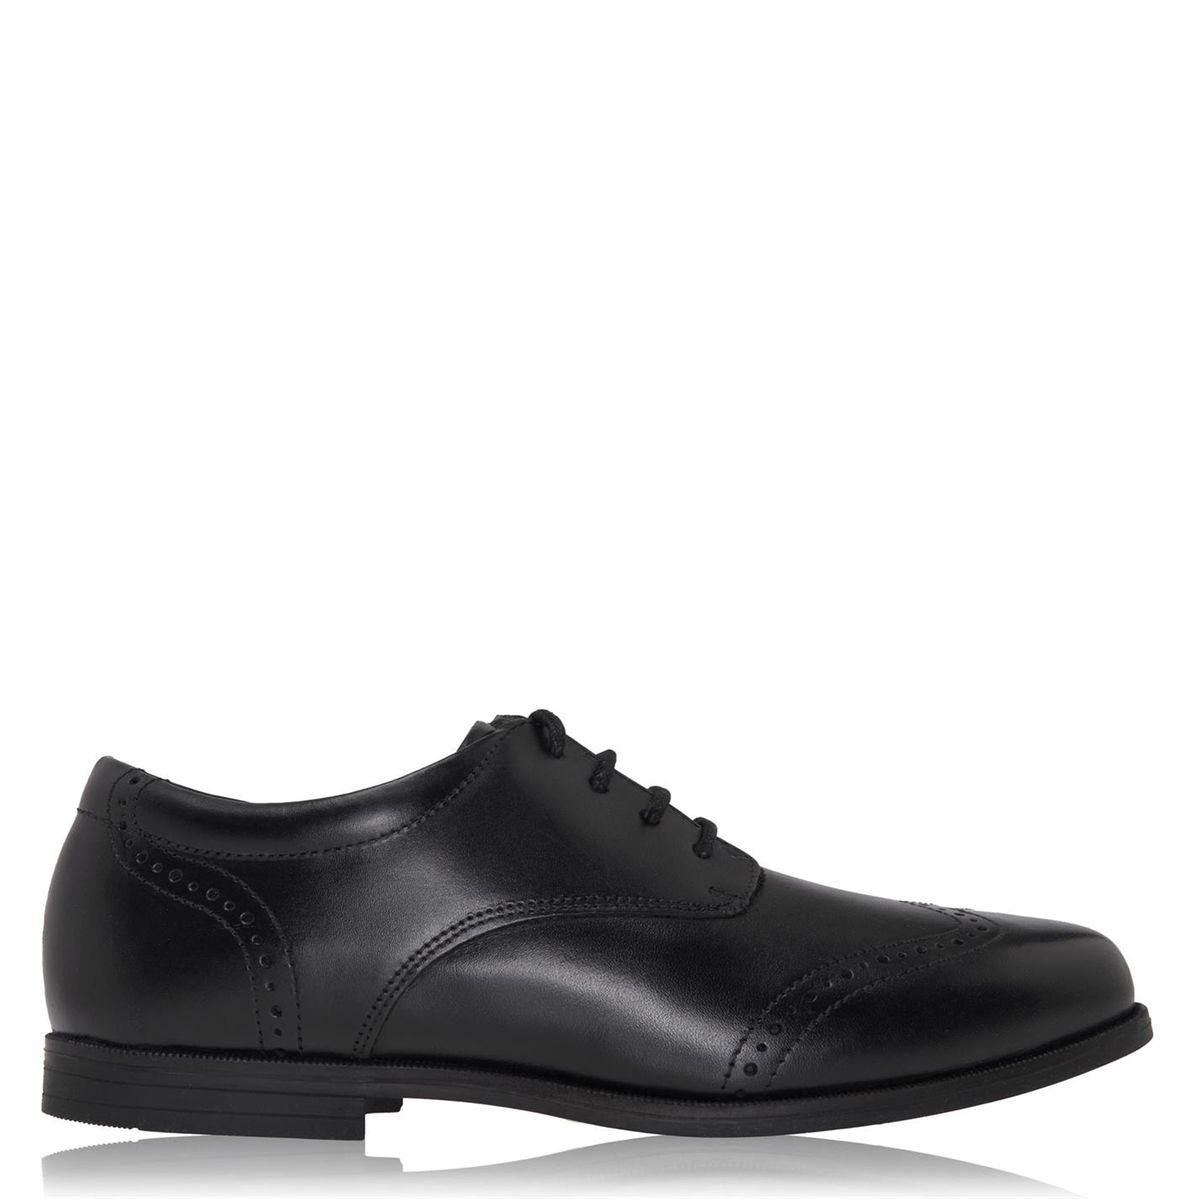 Never 2 Hot Richelieu noir style d\u2019affaires Chaussures Chaussures de travail Richelieu 